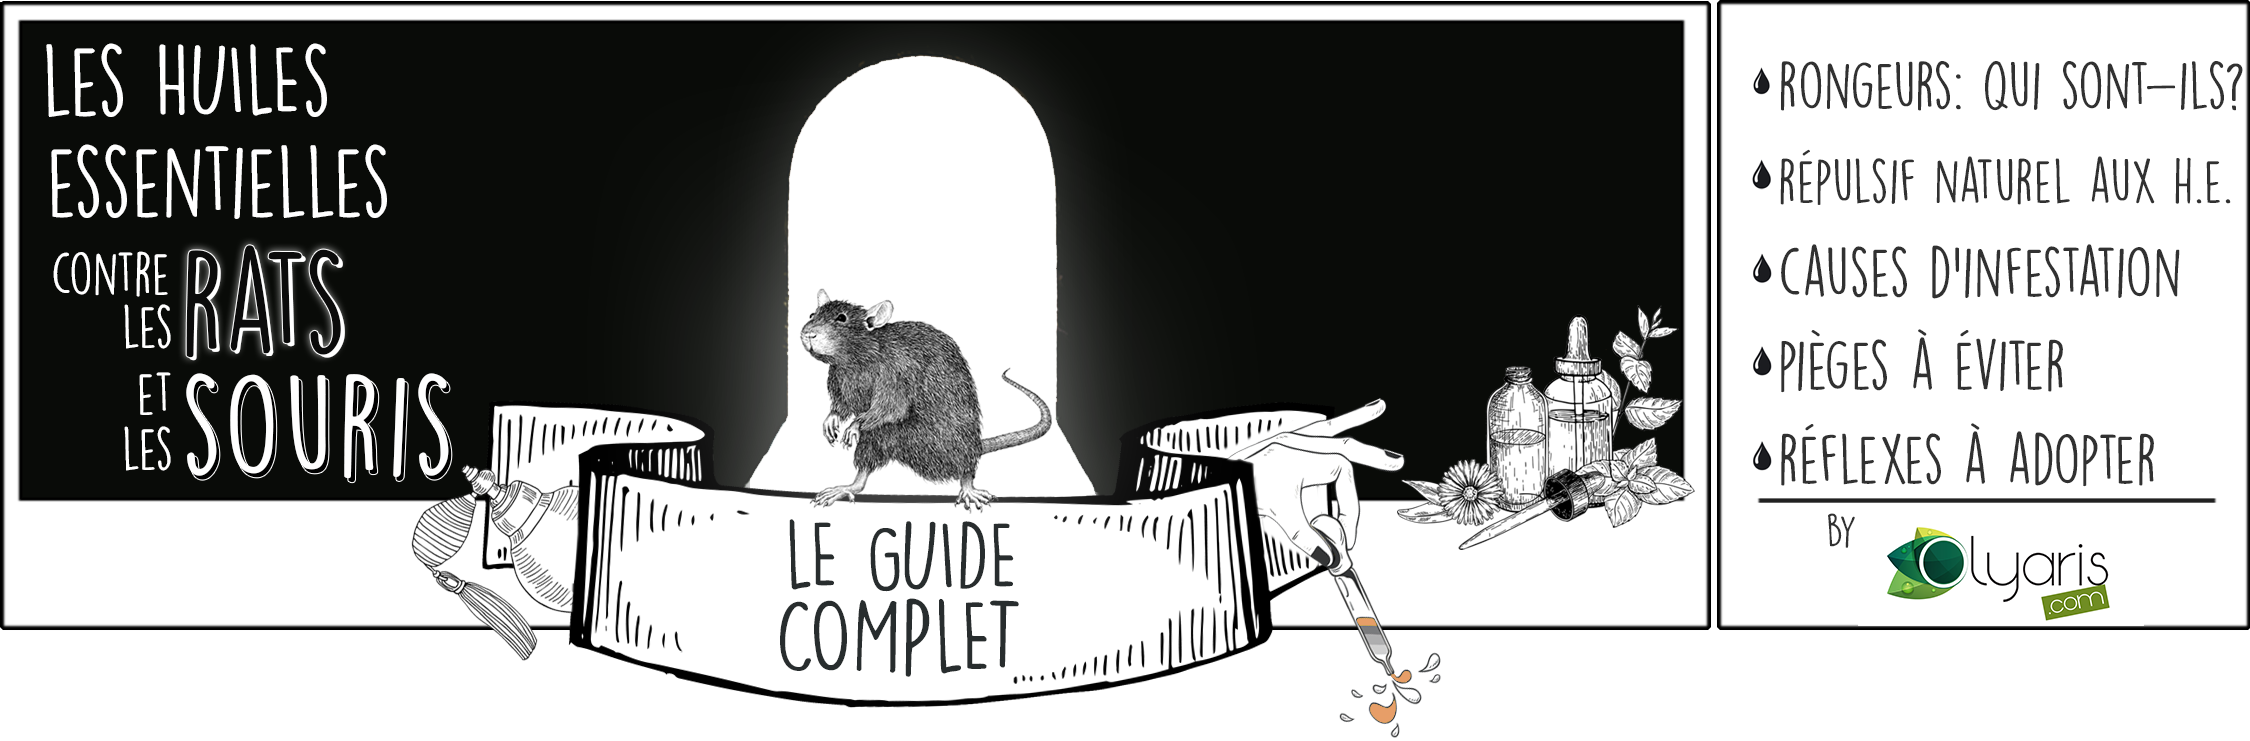 Répulsif Anti-Rats et Souris : Le Pack d'Huiles Essentielles Souratis+